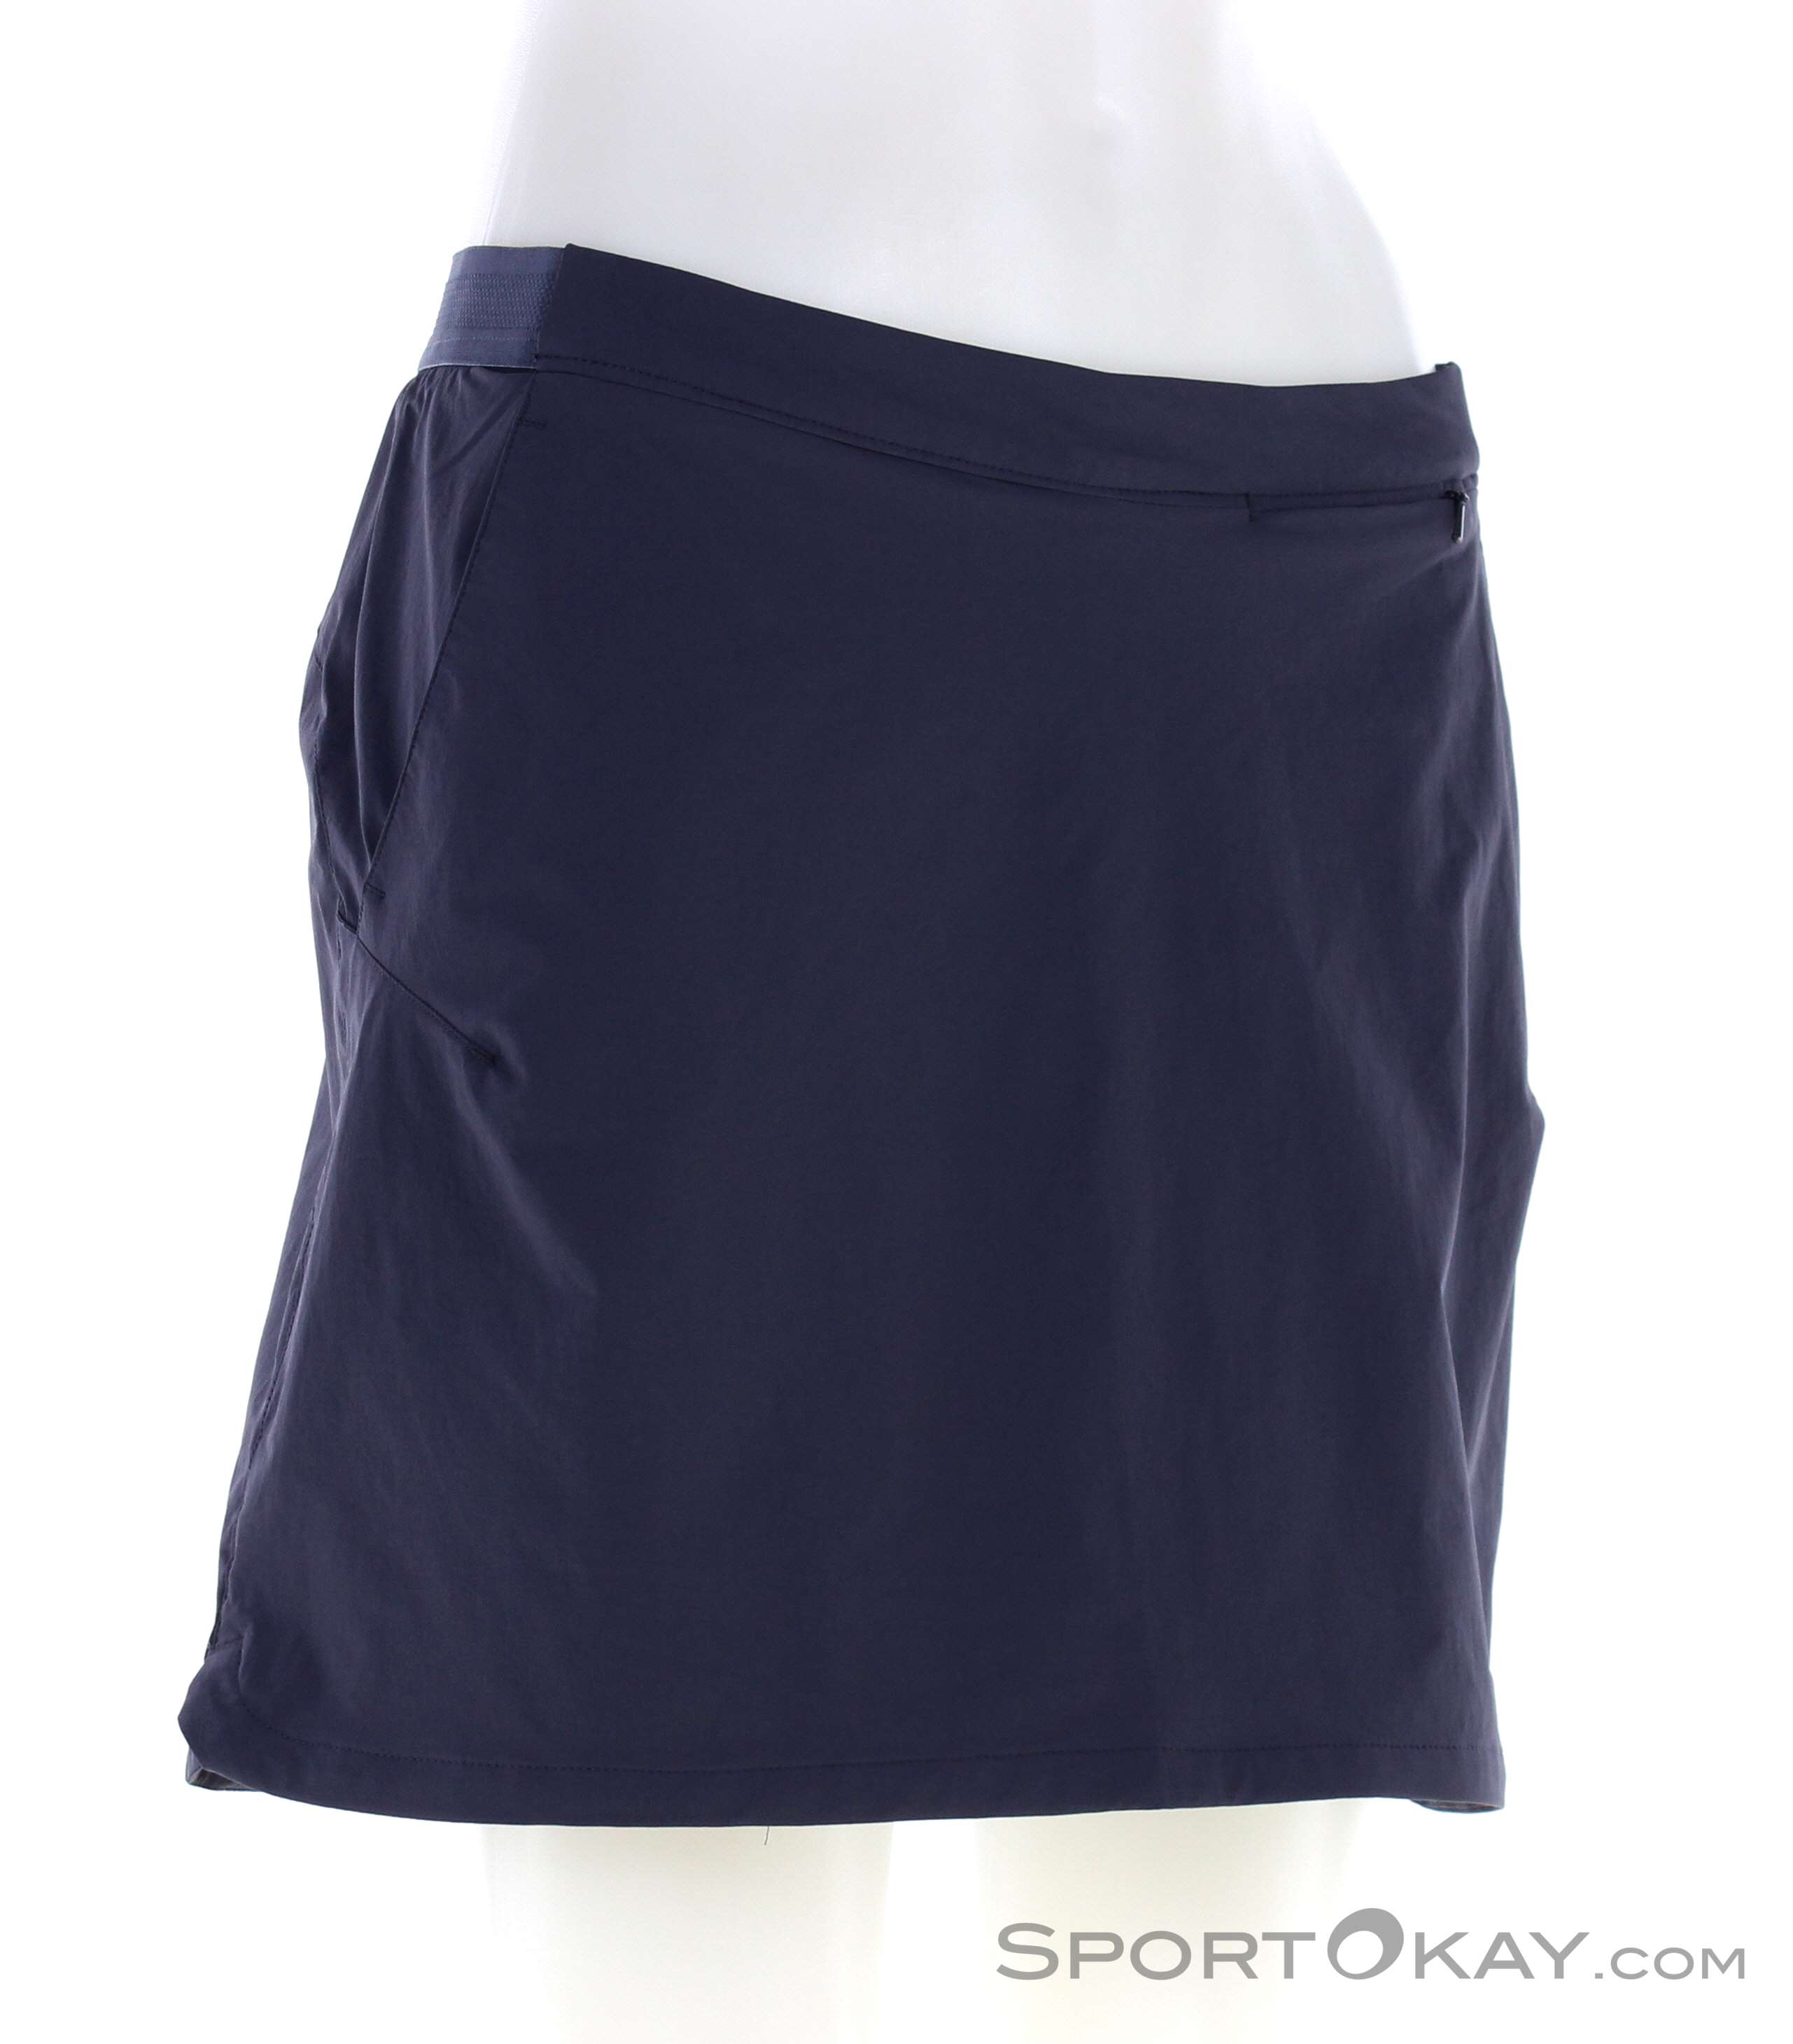 Jack Wolfskin Outdoor - Outdoor Hilltop Skort - Women - Pants All Trail Clothing - Outdoor Skirt